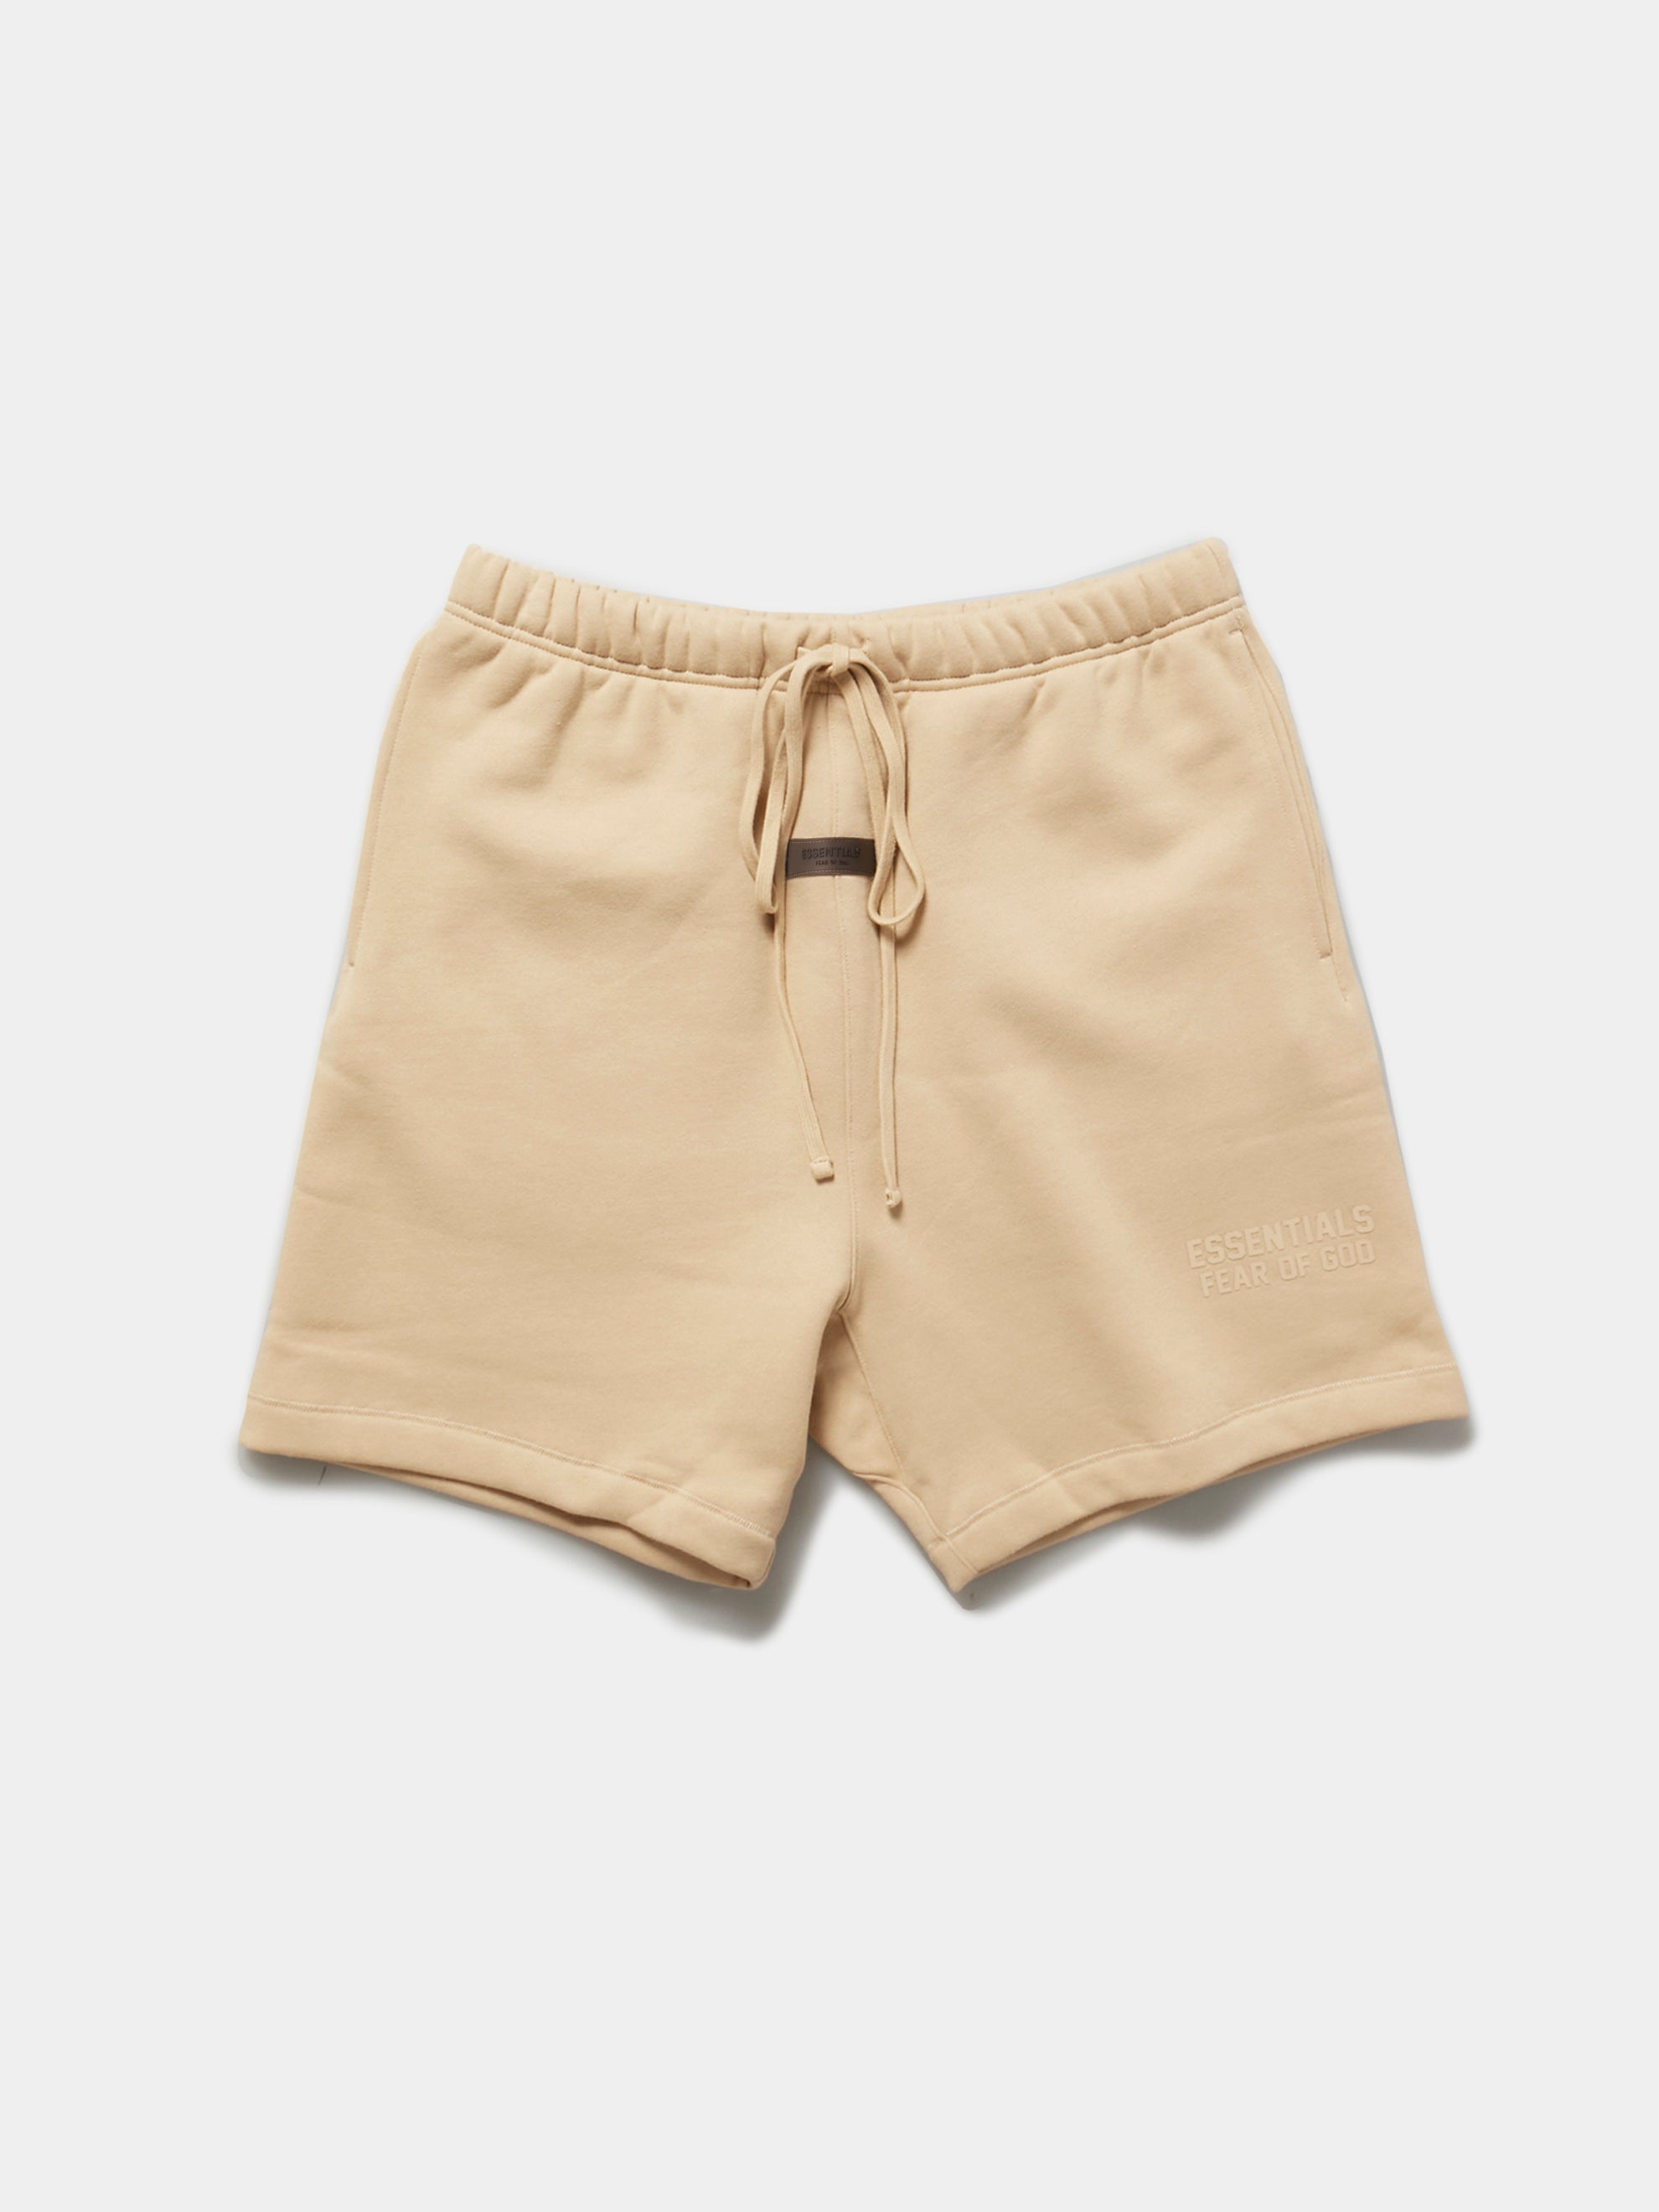 Essentials Shorts (Sand)